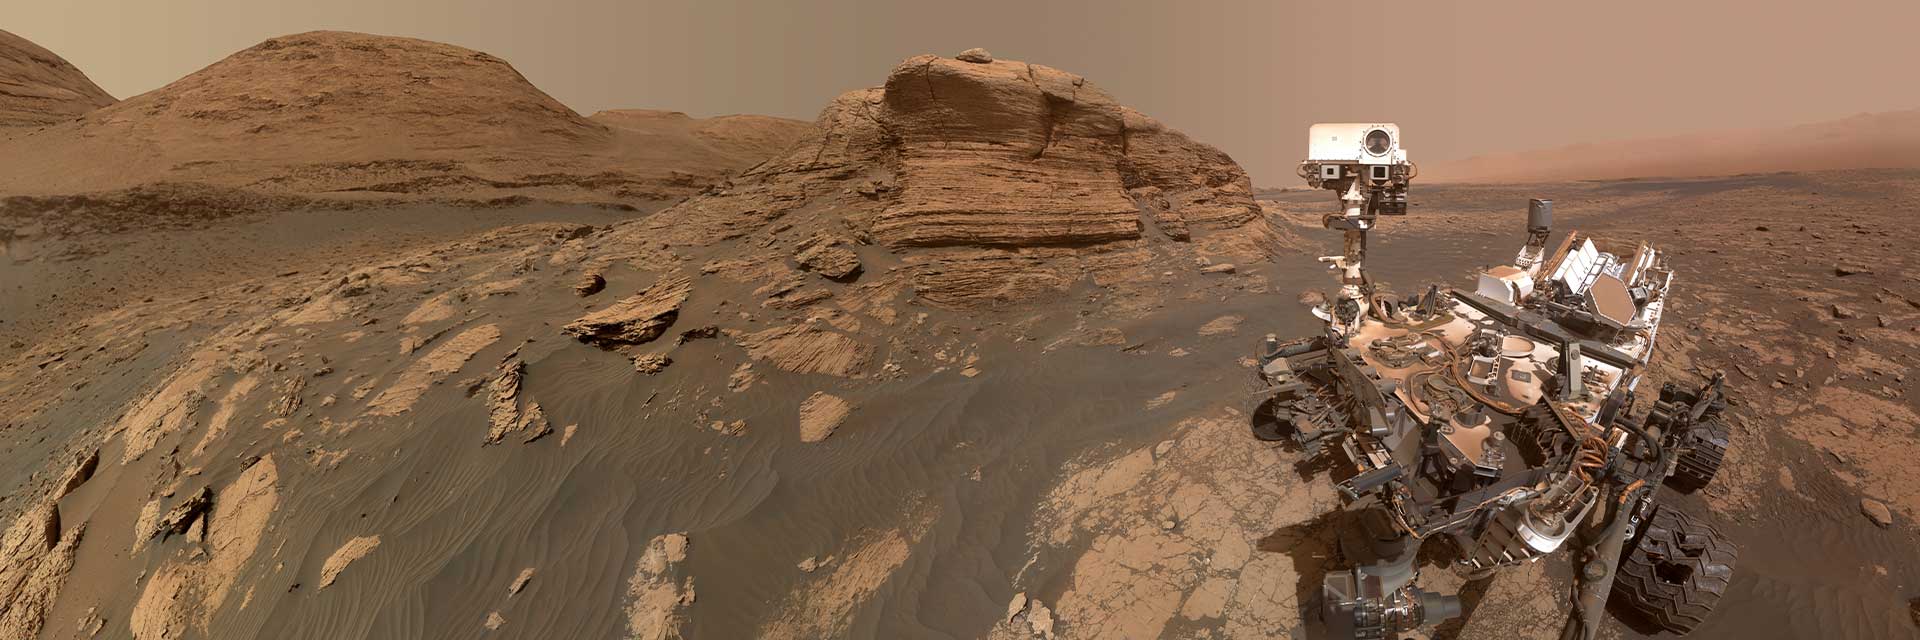 火星漫游者坐在火星的红土上，面对摄像机自拍